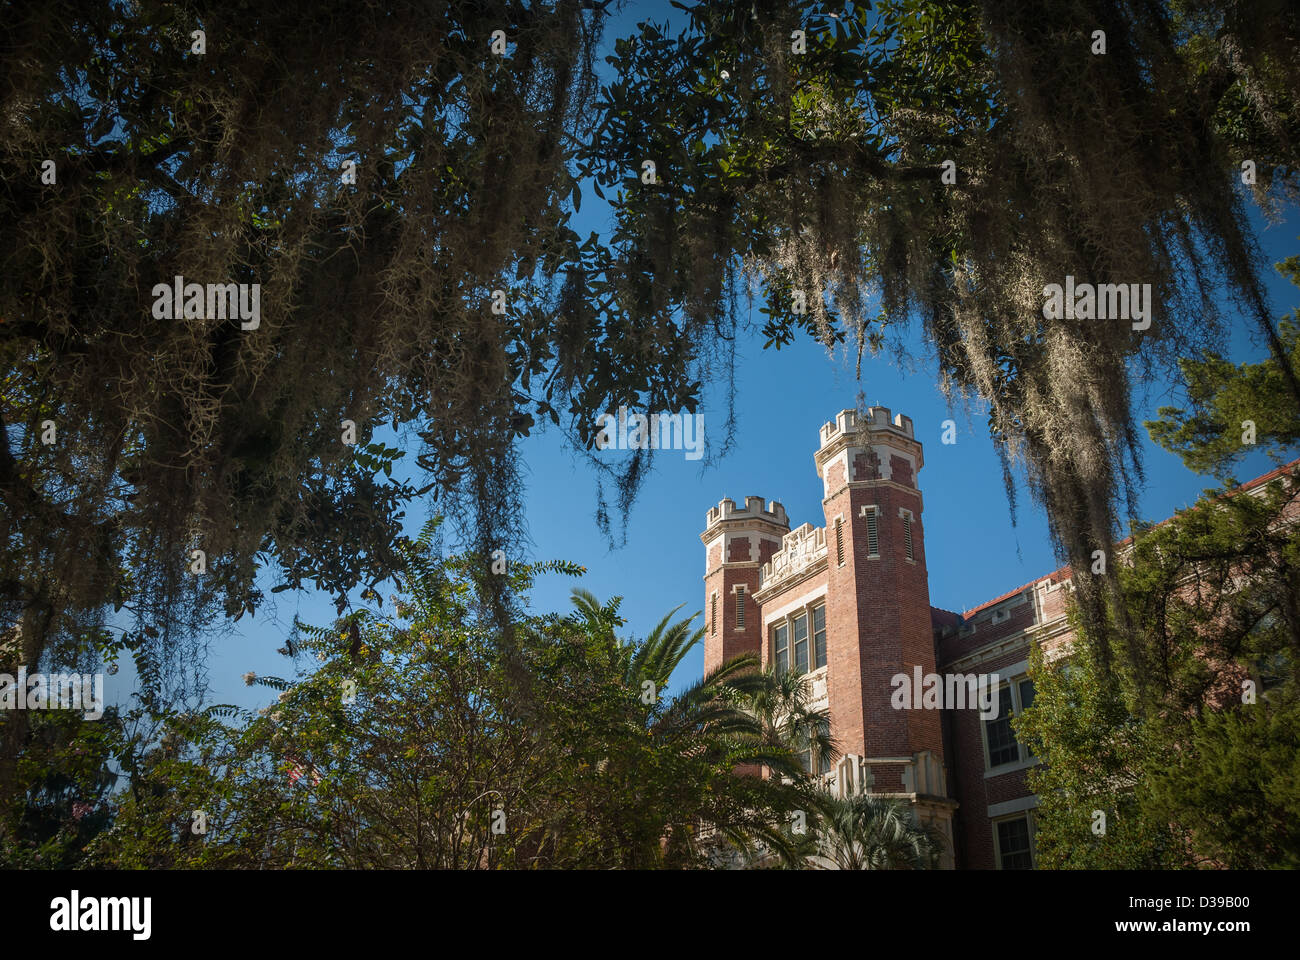 Le bâtiment Wescott de l'Université d'État de Floride, exposé au soleil du matin à travers le feuillage de Floride et la mousse espagnole à Tallahassee, Floride. (ÉTATS-UNIS) Banque D'Images